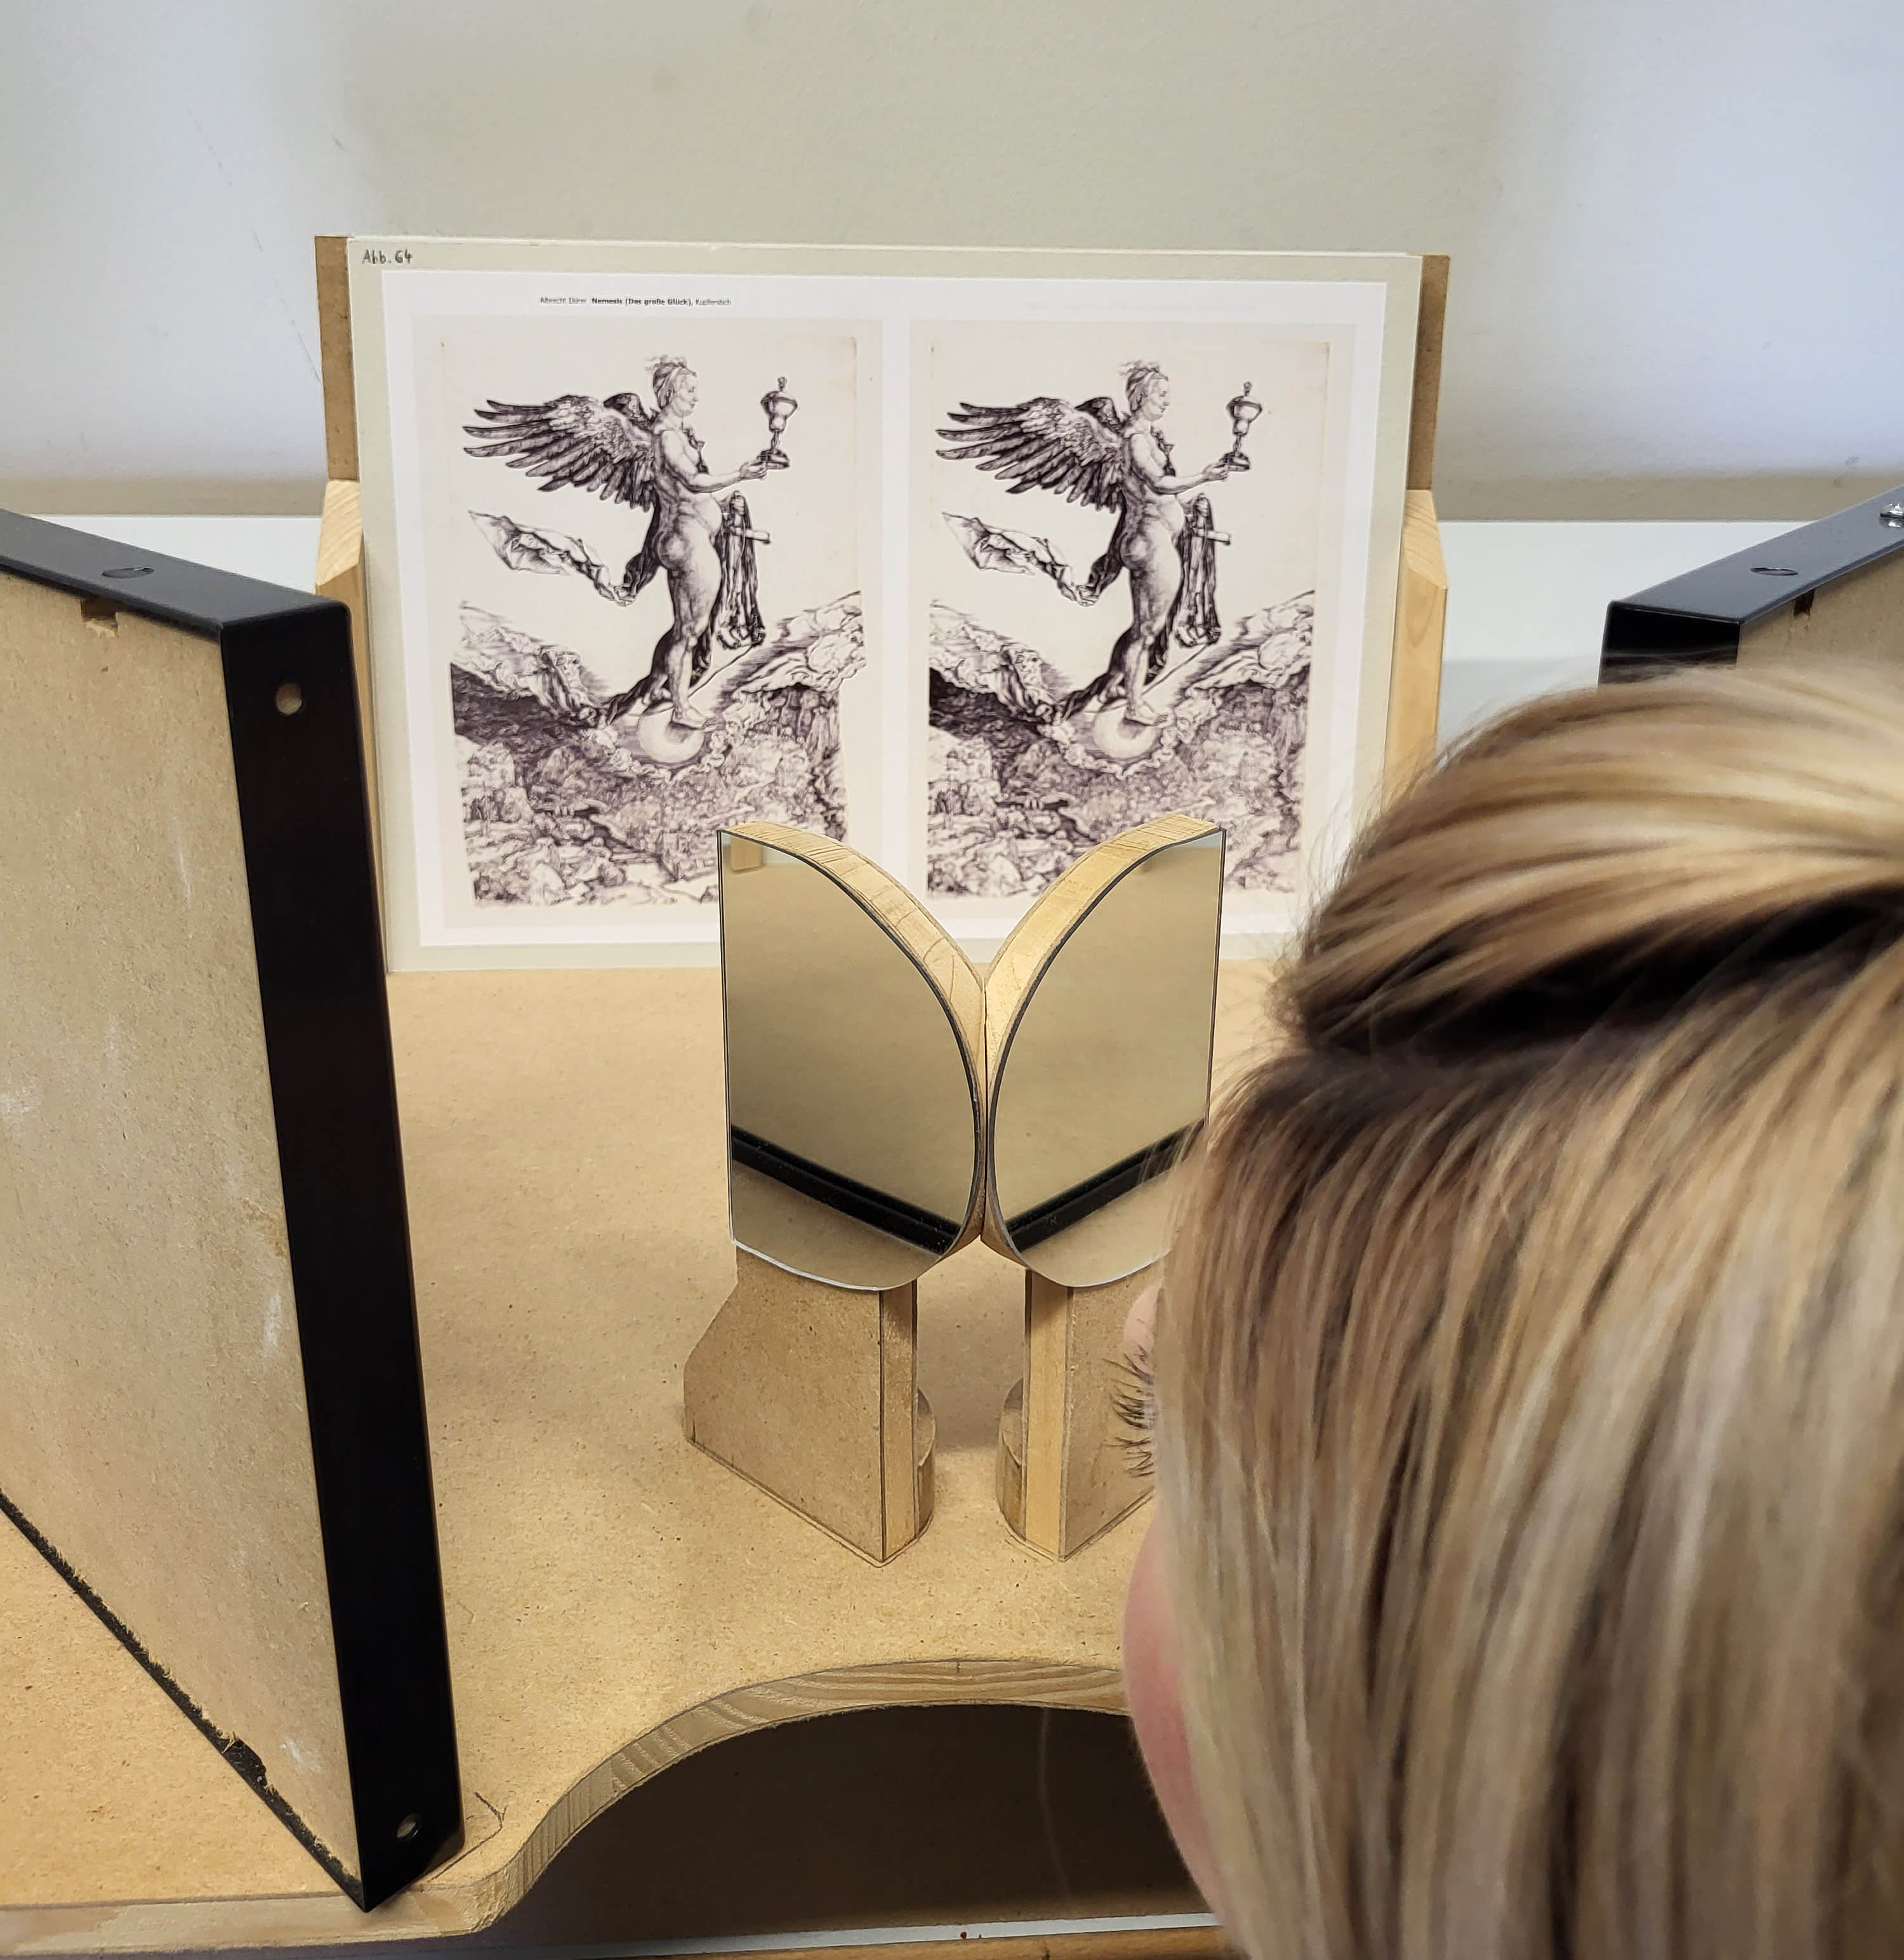 Eine von hinten zu sehende Person blickt in Richtung eines auf einem Tisch angeordneten stereoskopischen Doppelbildes.